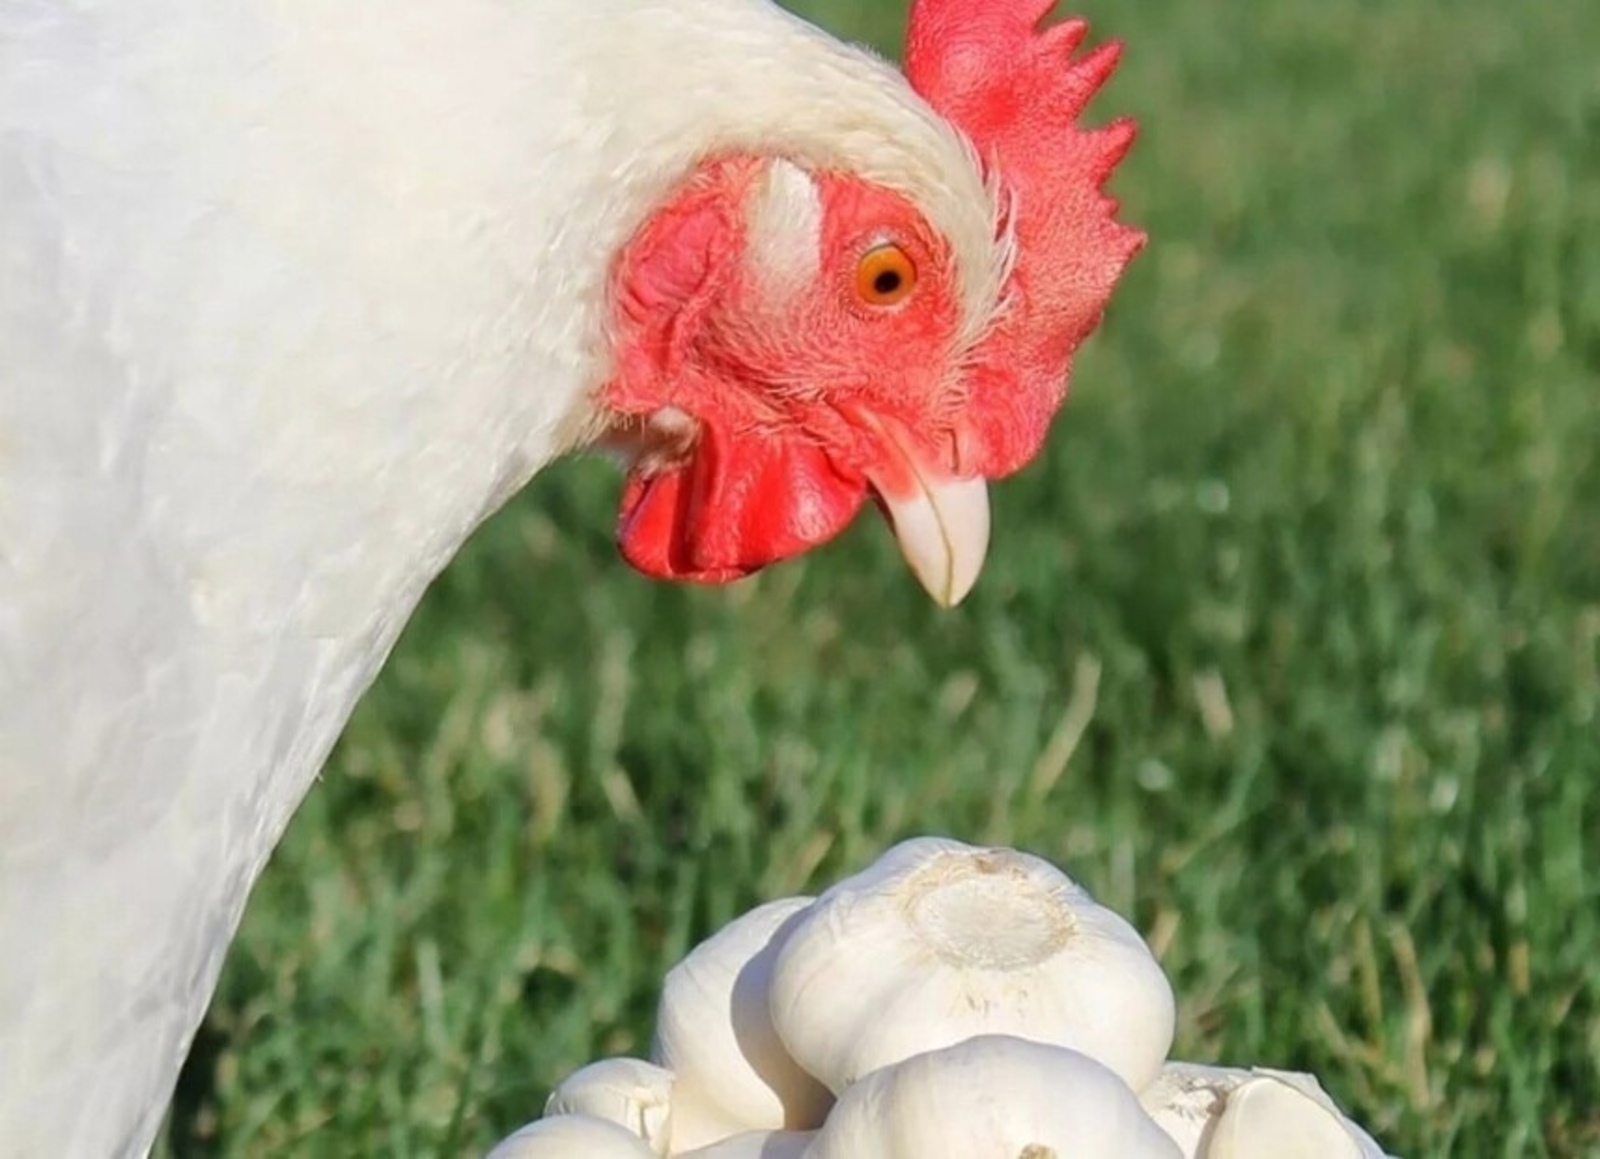 Полезен ли чеснок цыплятам и курам?